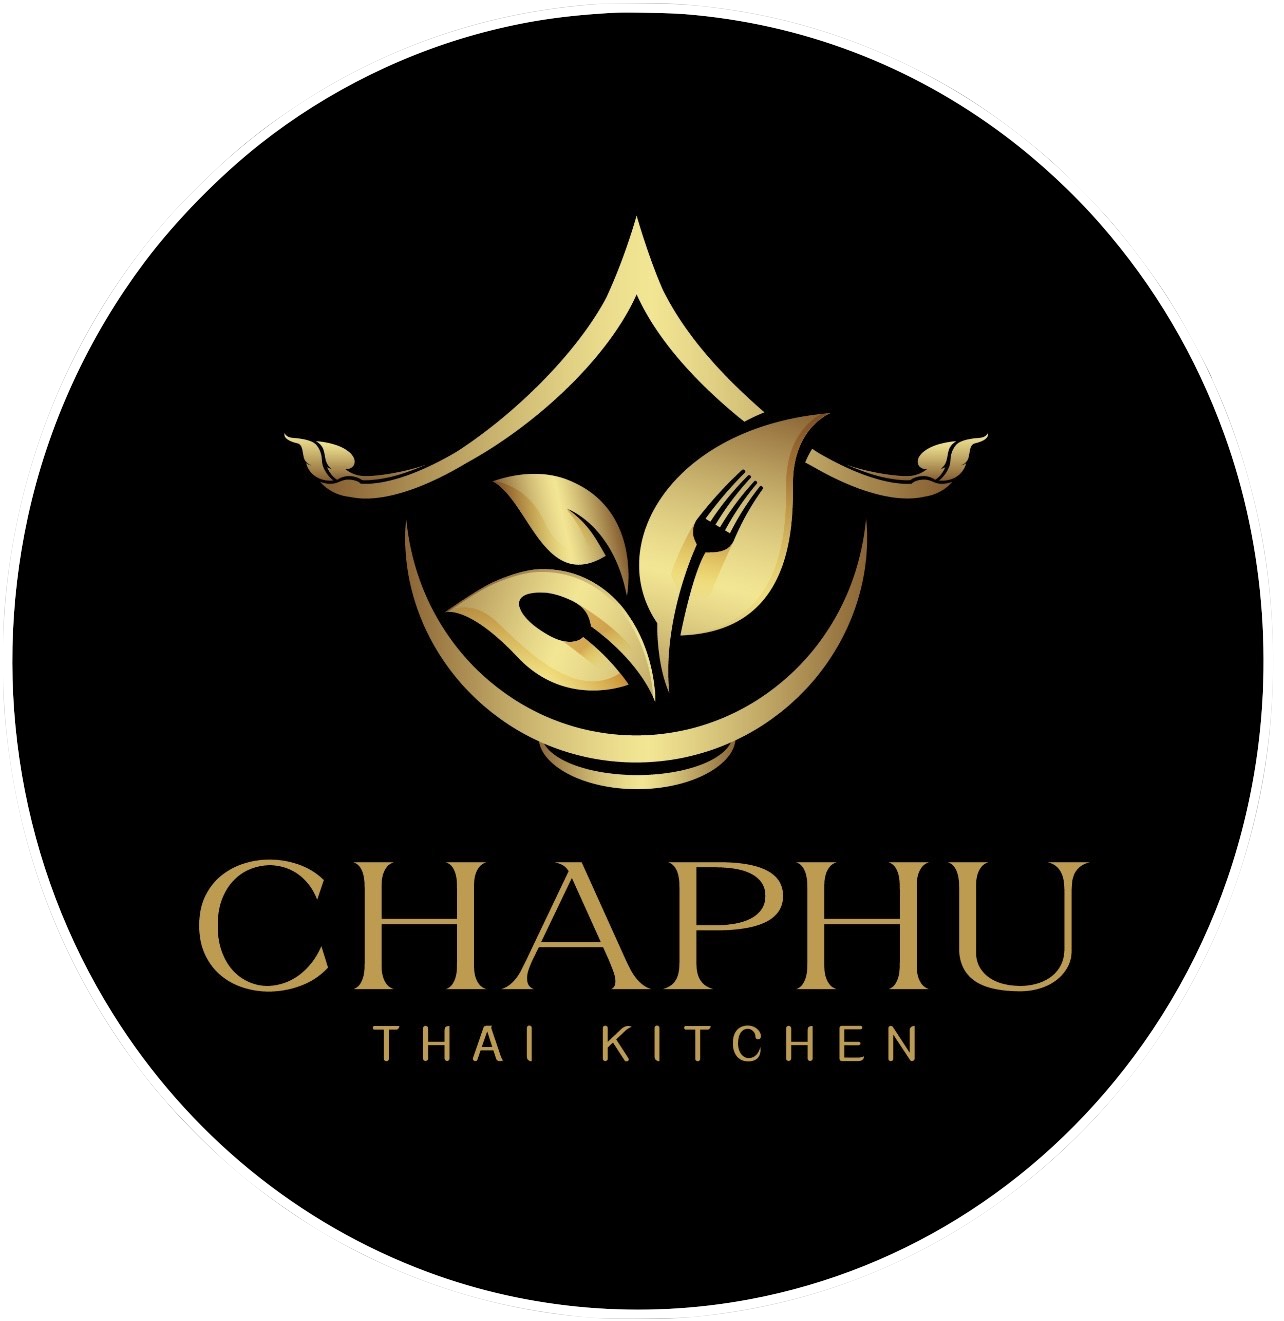 Chaphu Thai Kitchen